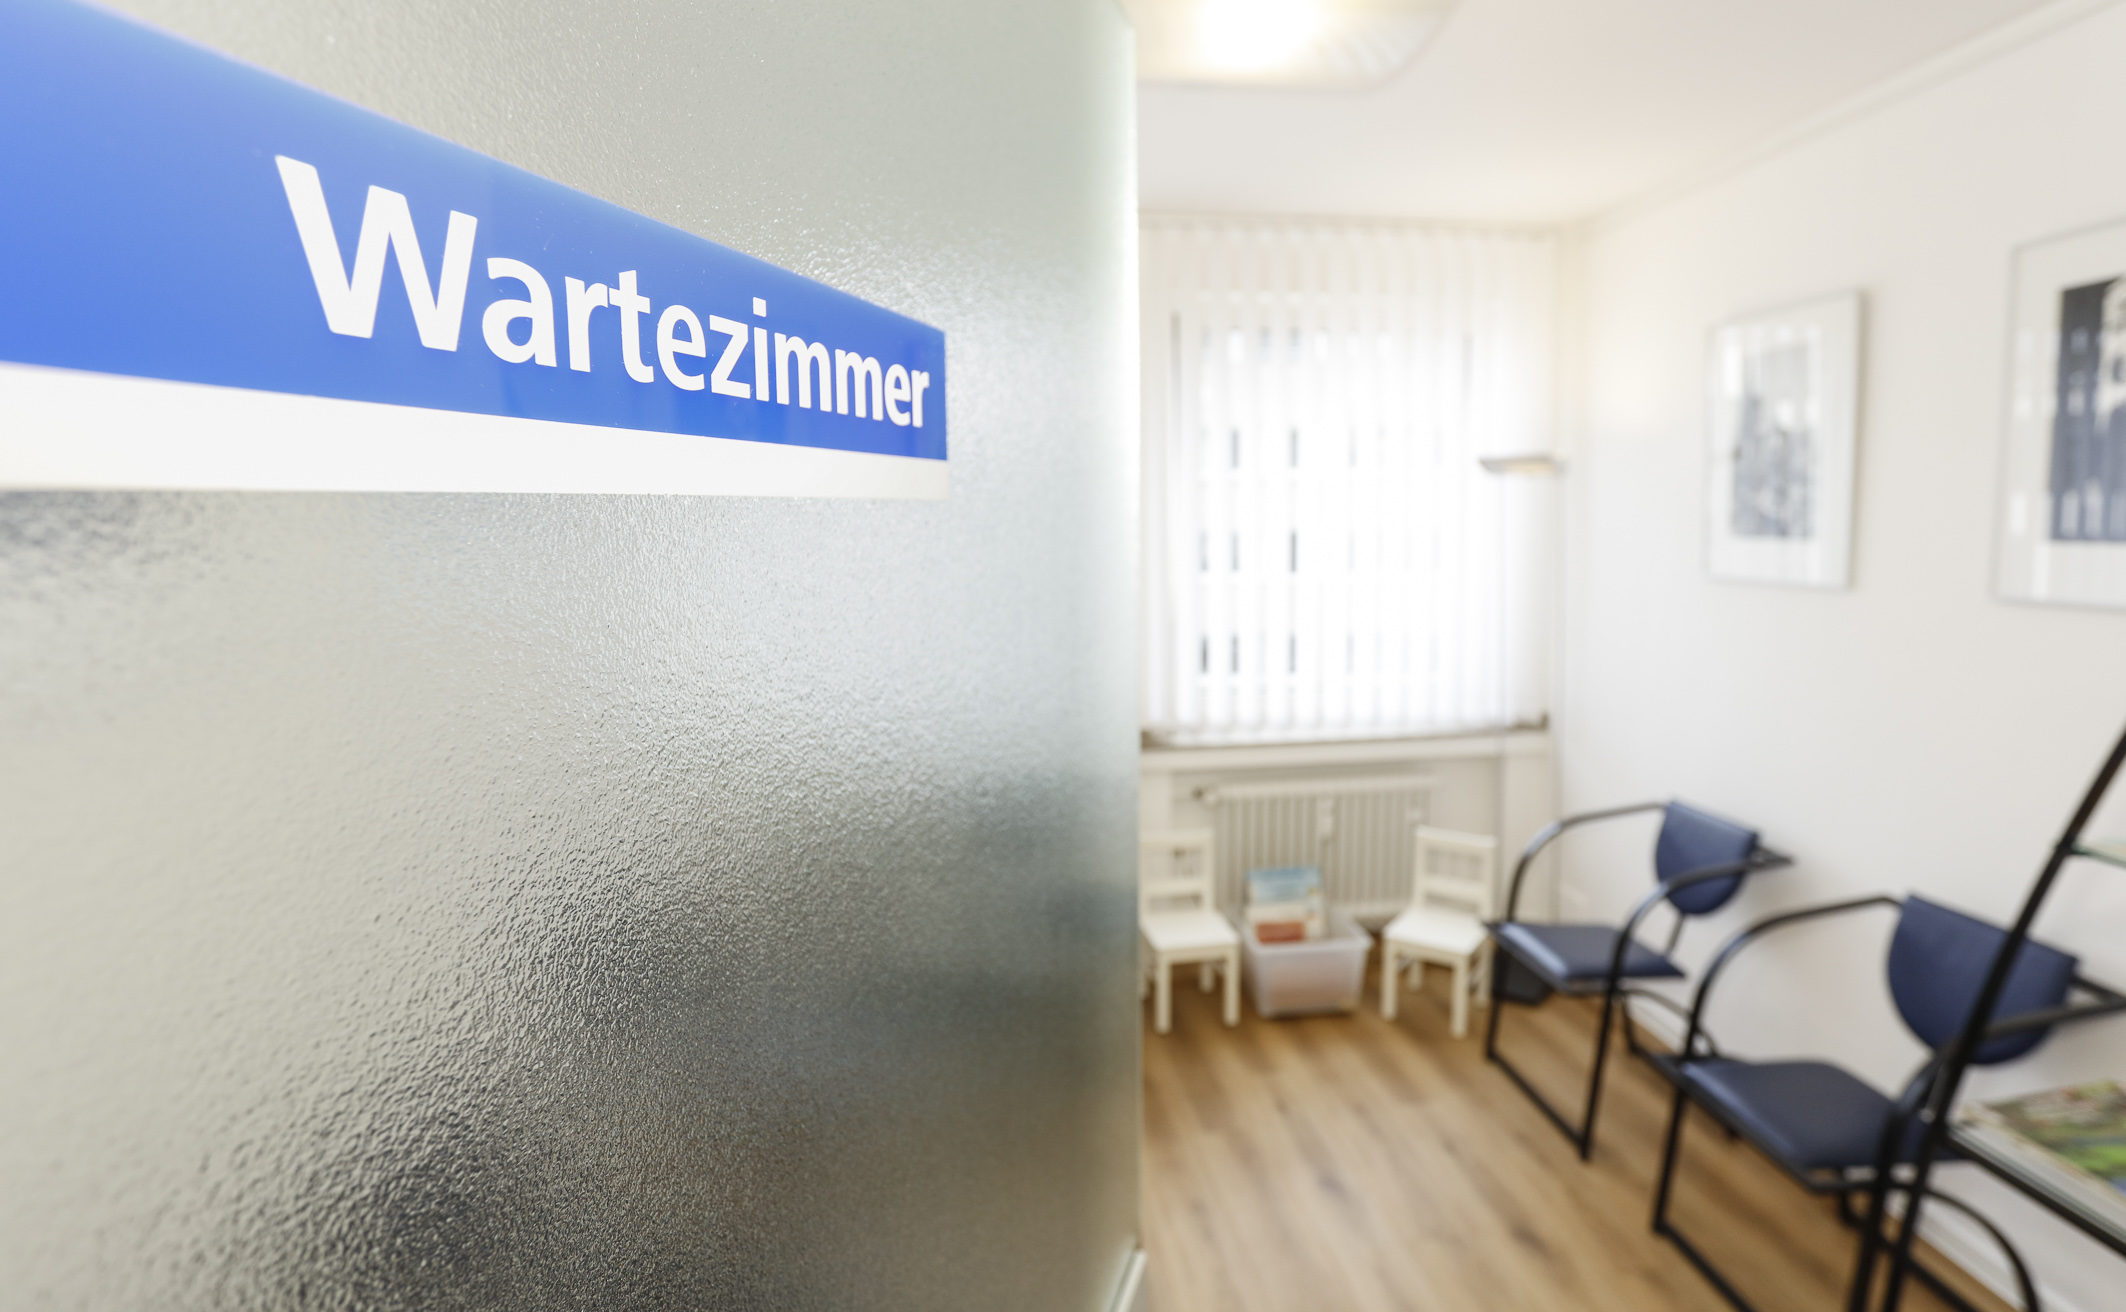 Wartezimmer | Zahnarztpraxis Dr. Küppers